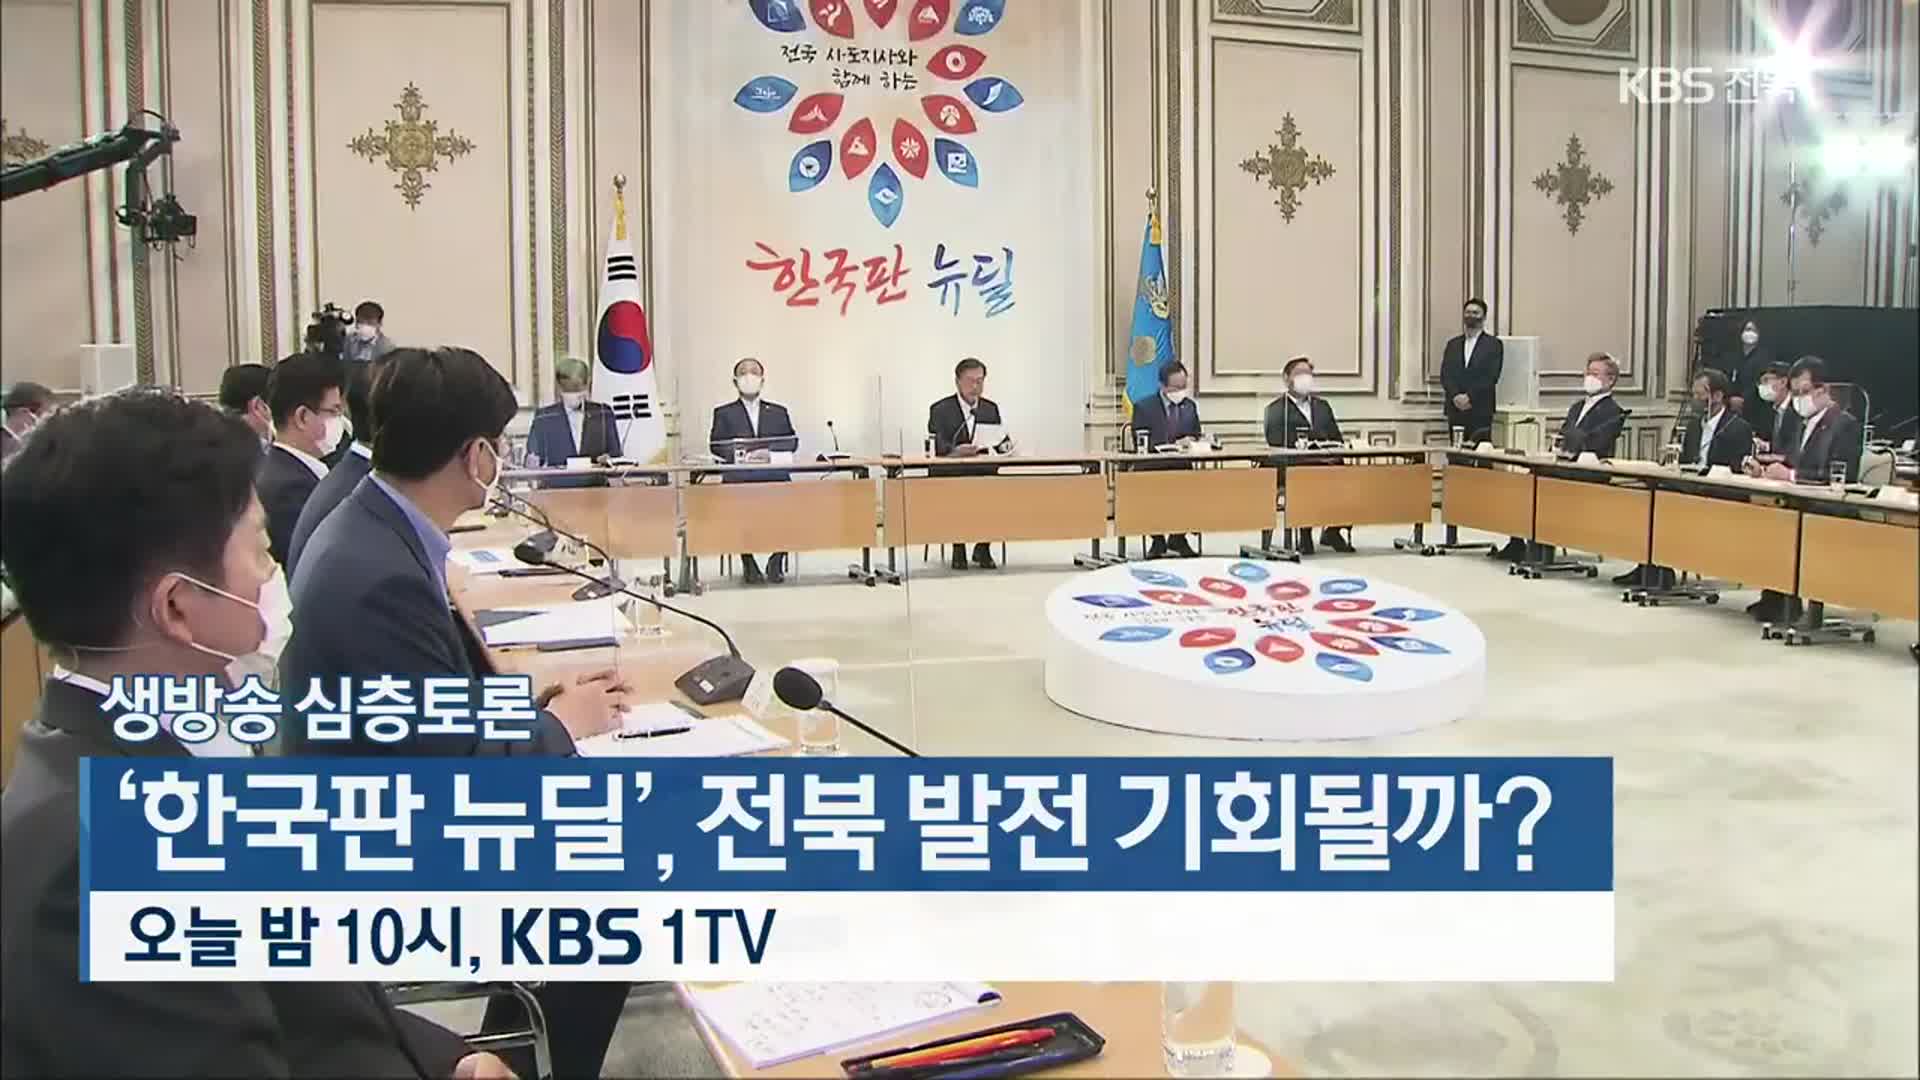 [생방송 심층토론] ‘한국판 뉴딜’, 전북 발전 기회 될까? 오늘 밤 10시 방송